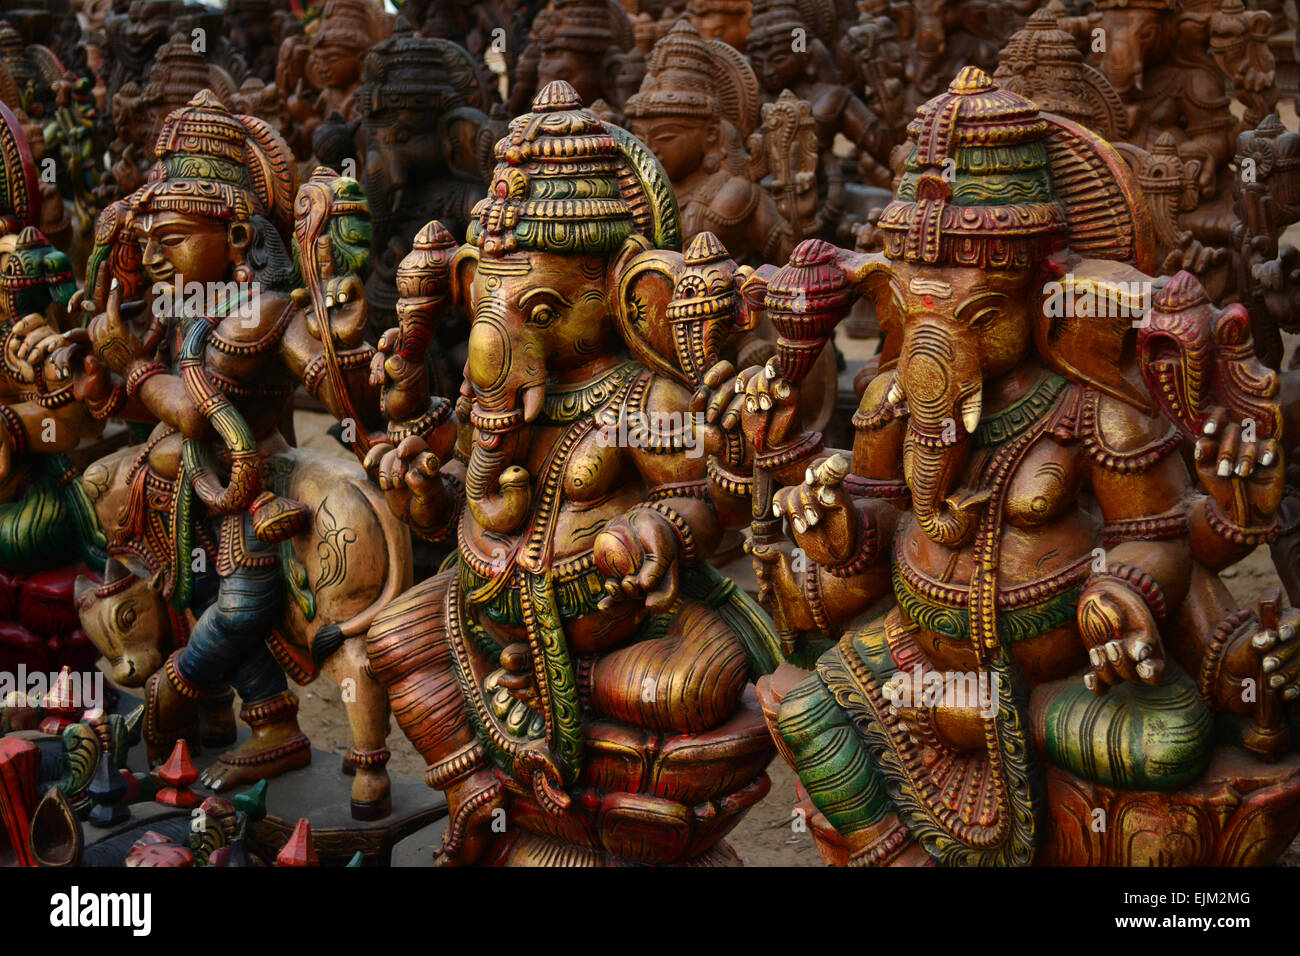 Hindu Elephant God, Lord Ganesha Stock Photo